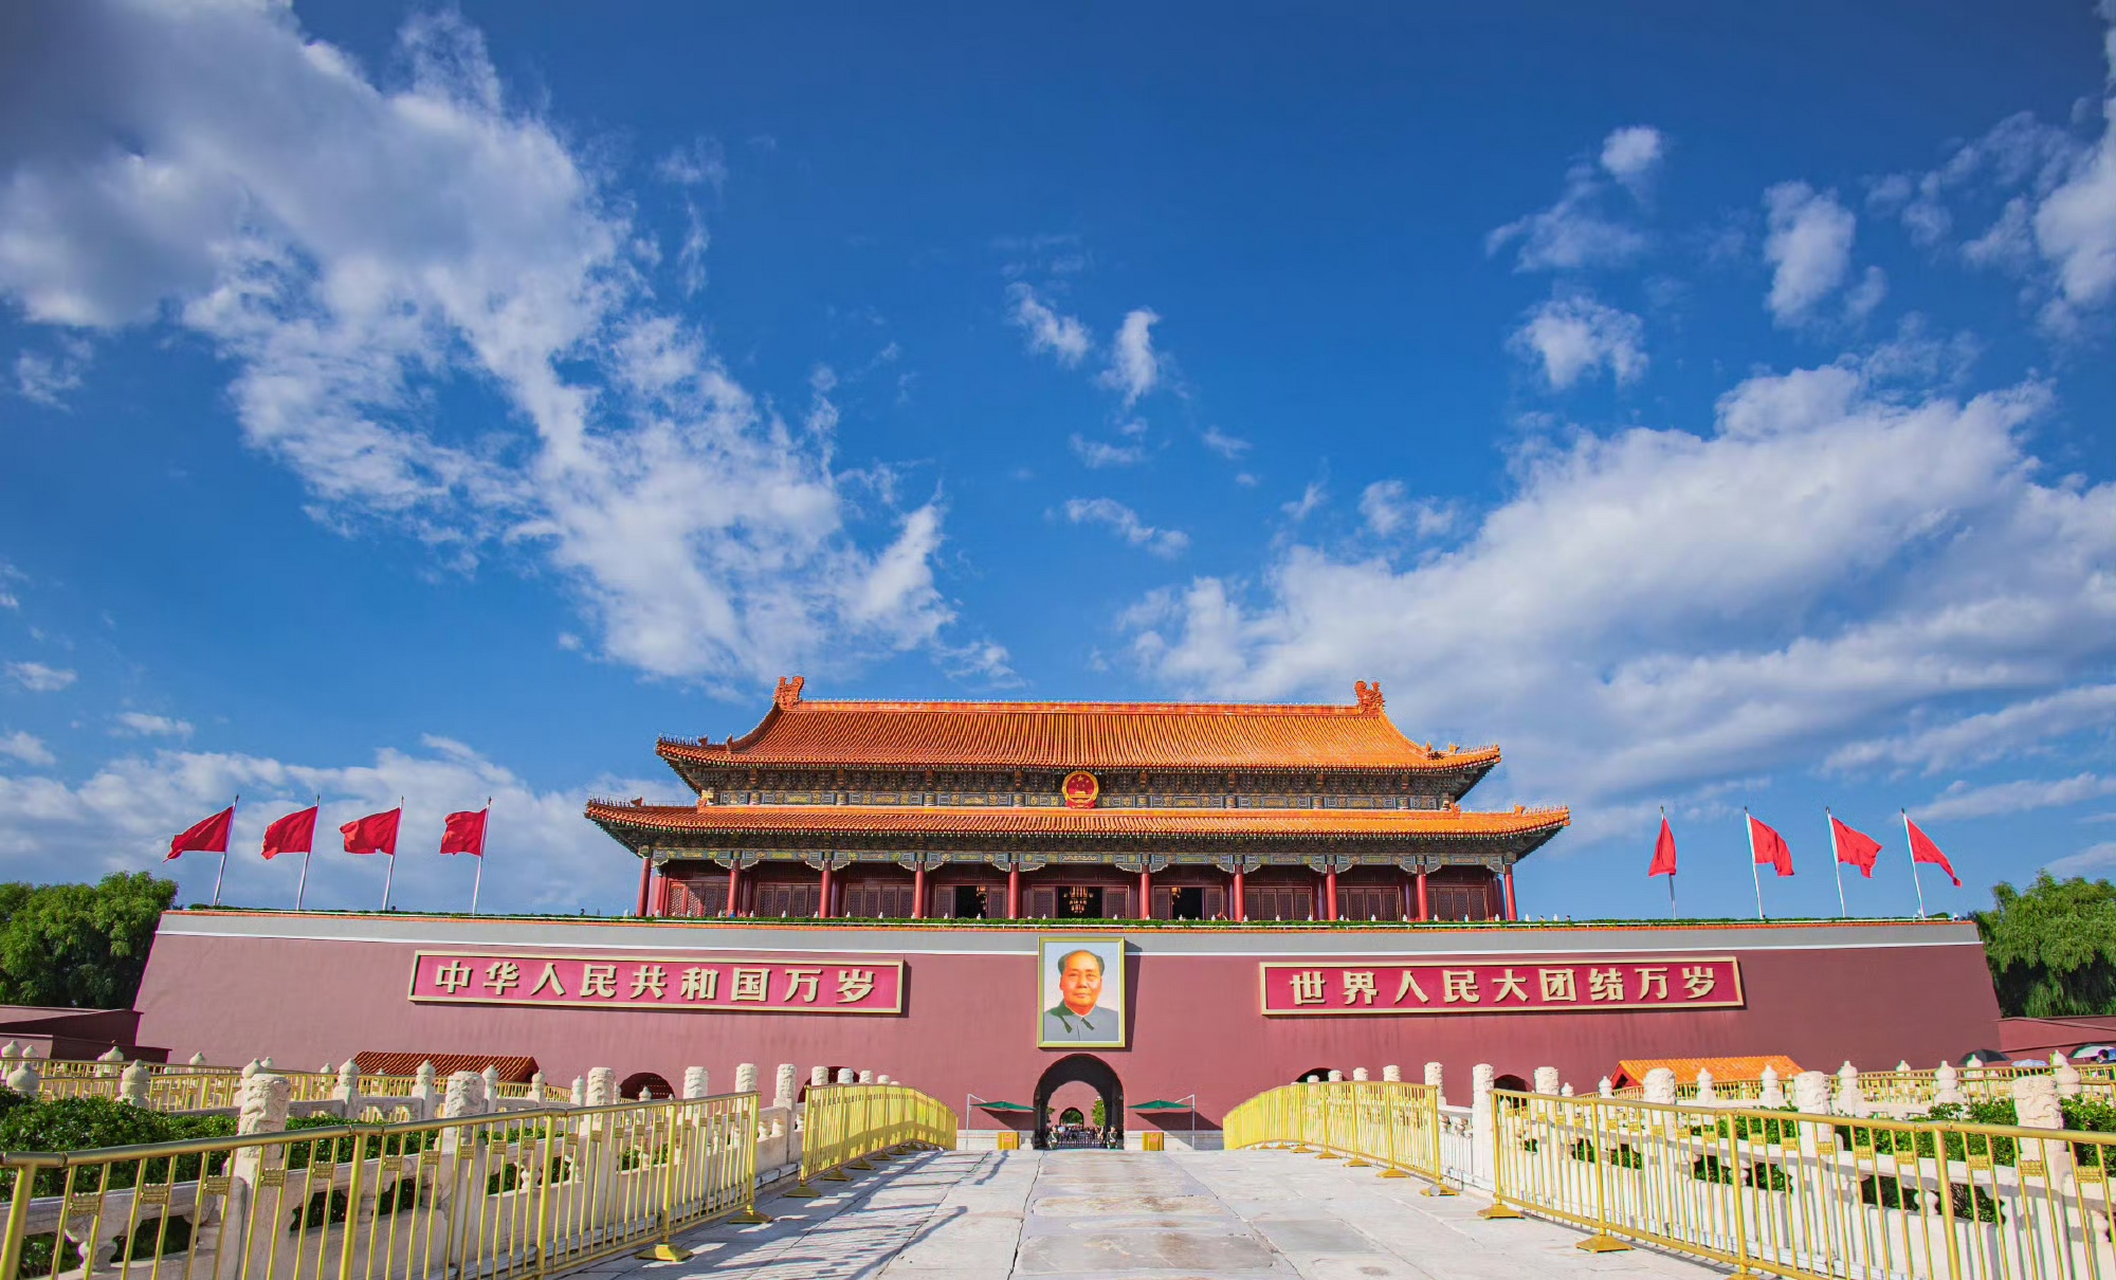 秋高气爽,北京的天安门成为了游客们最喜爱的景点之一